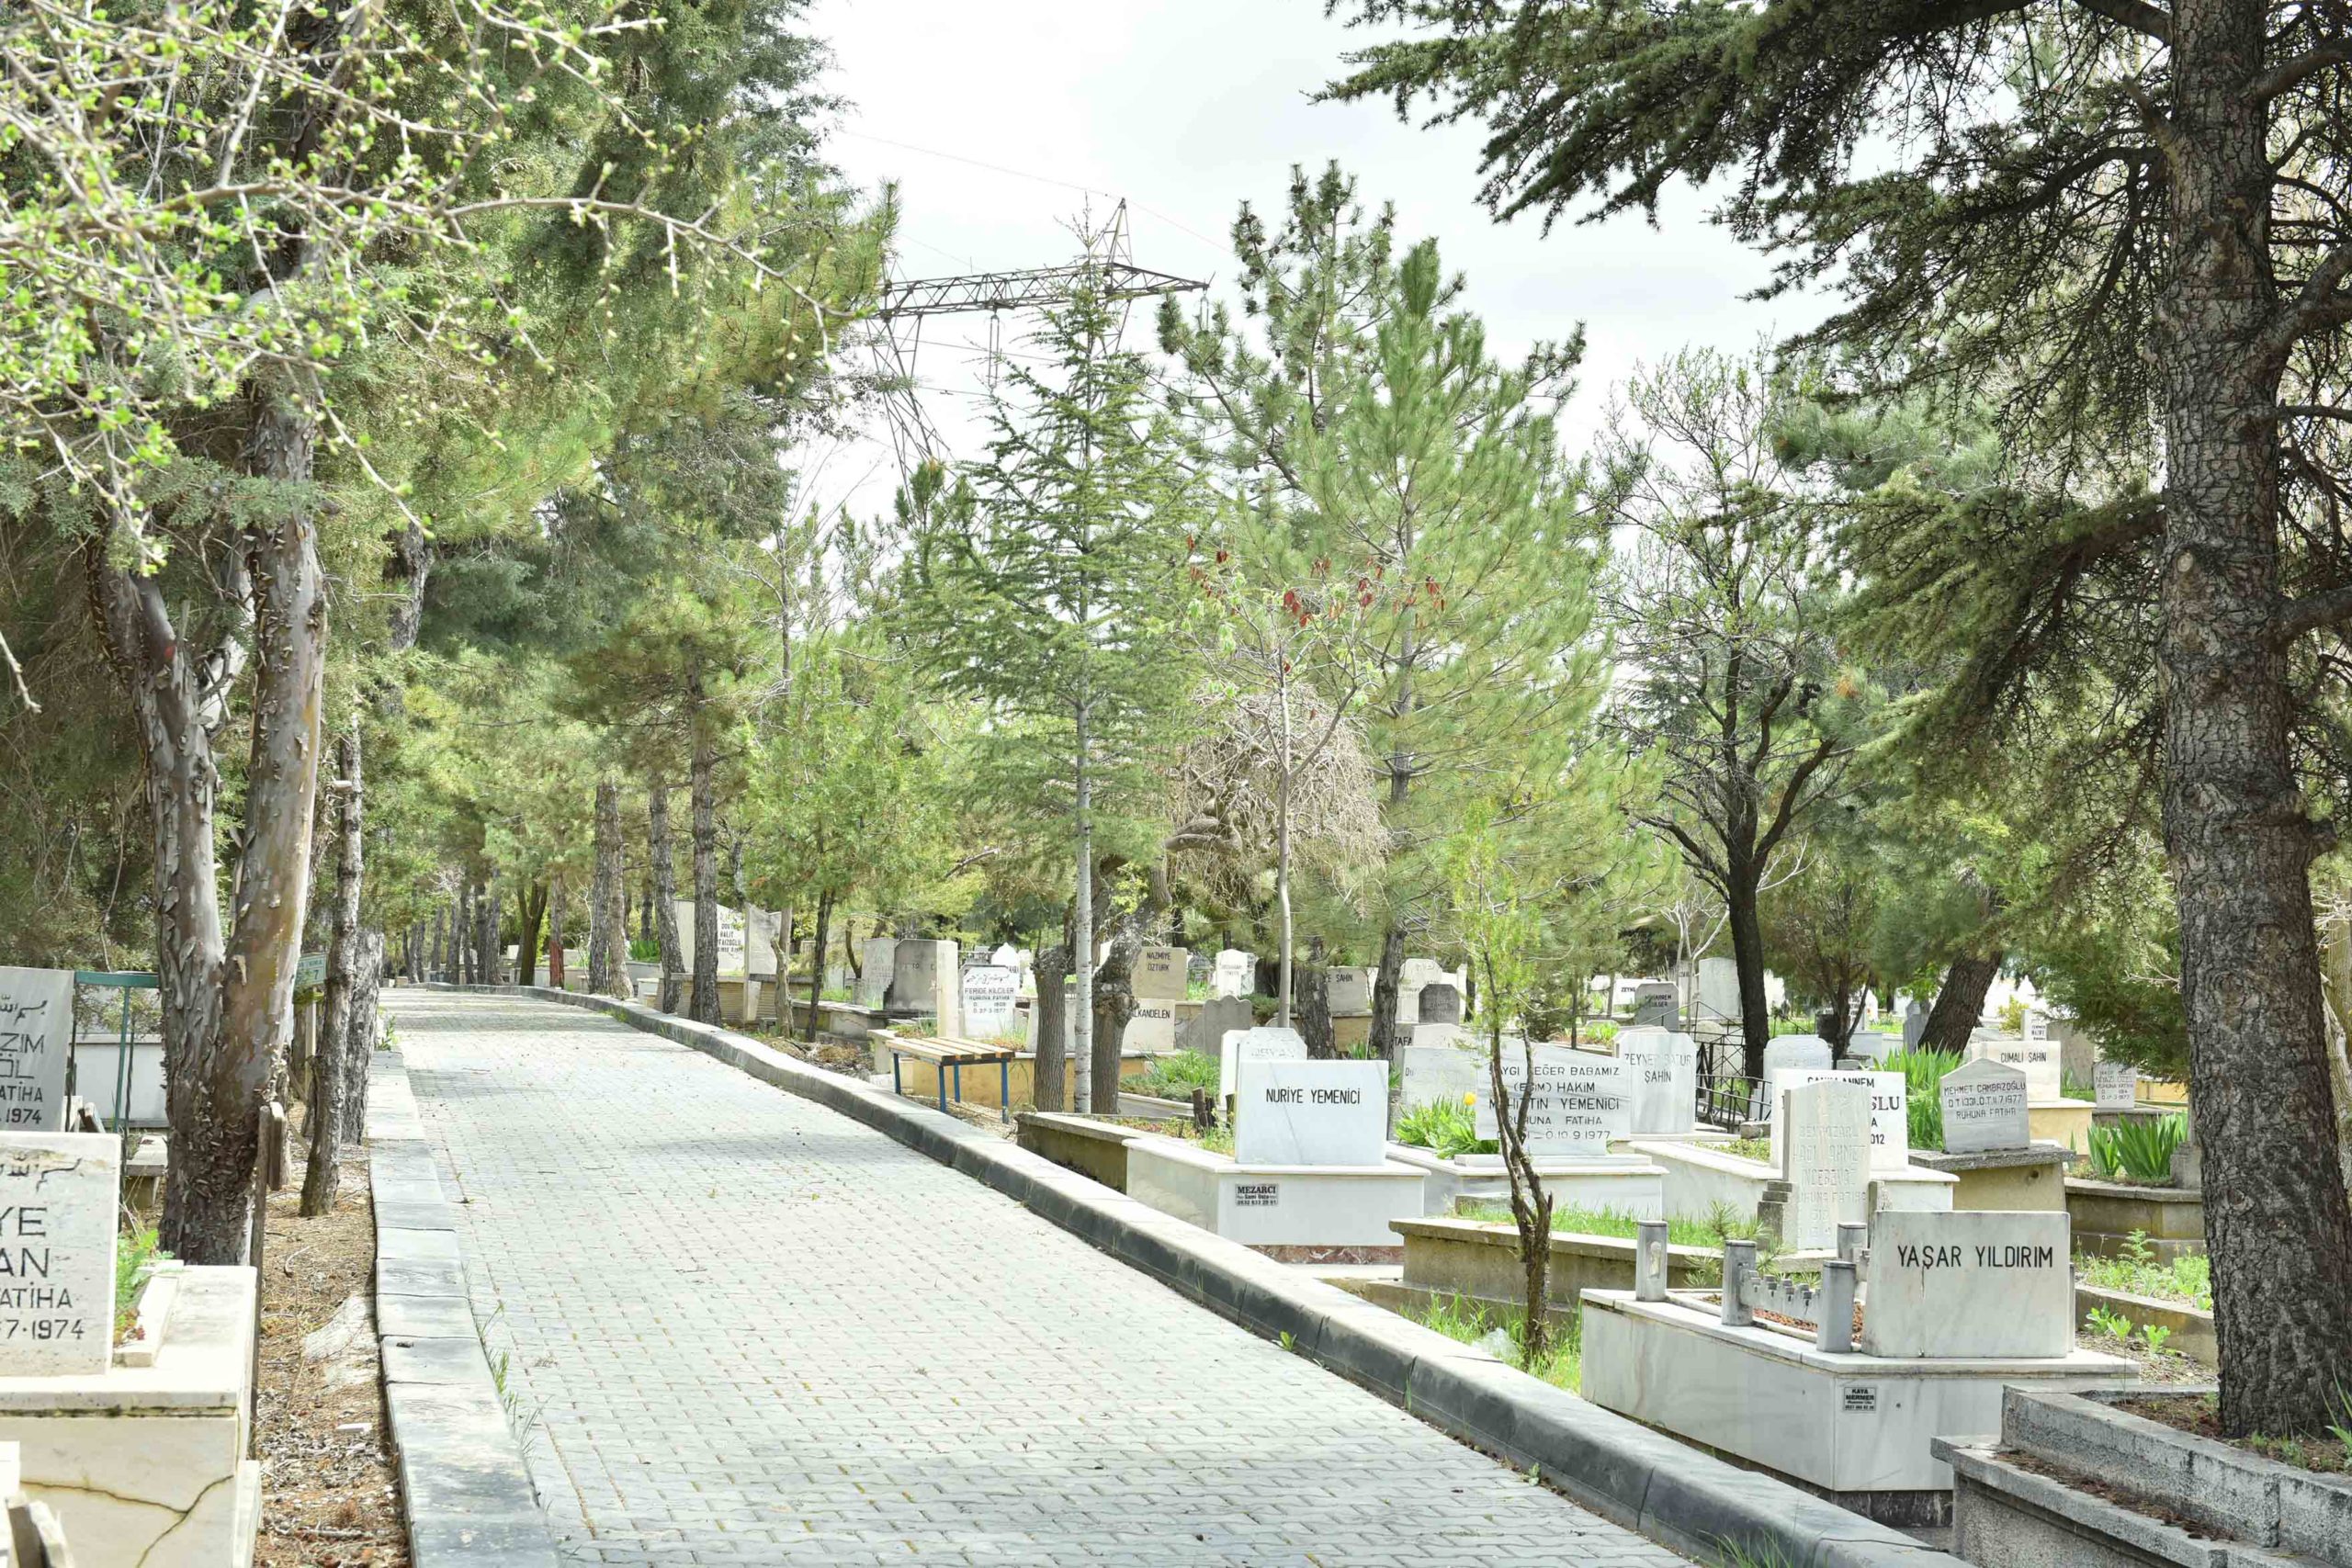  Ankara’da Bayram Öncesi, Mezarlıklarda Bakım Çalışmaları Yapılıyor